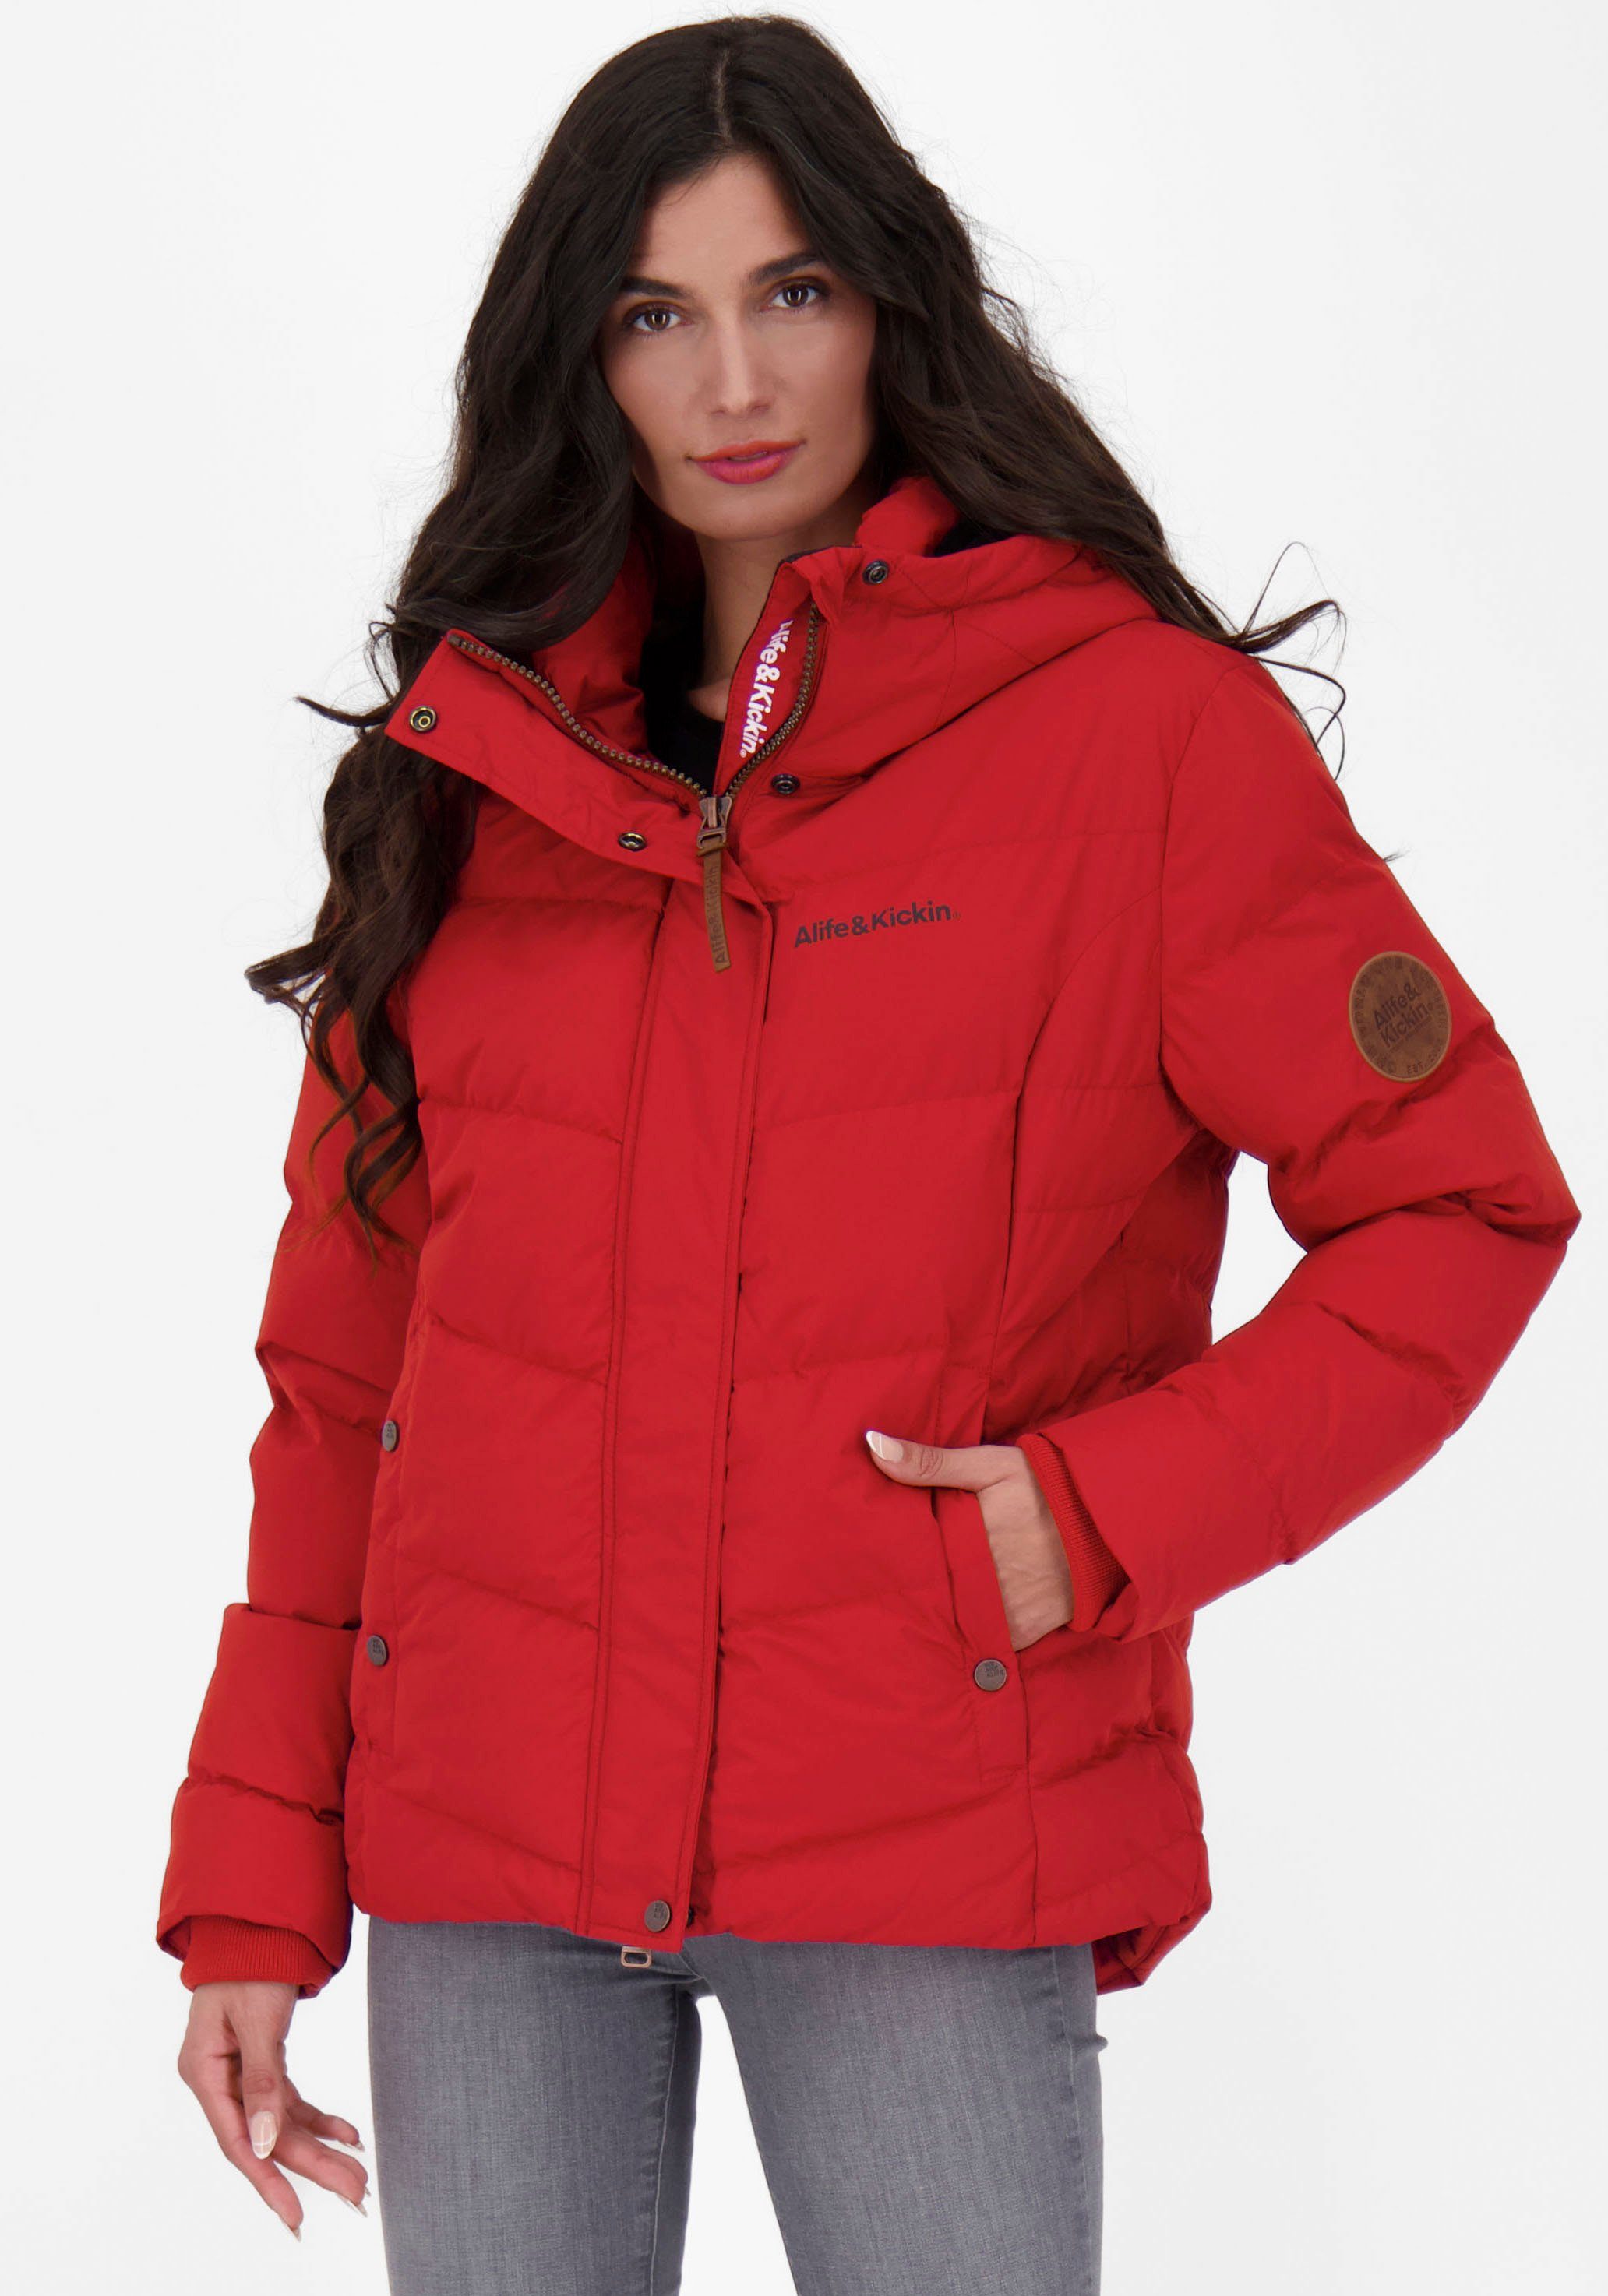 Rote Jacke online kaufen | OTTO